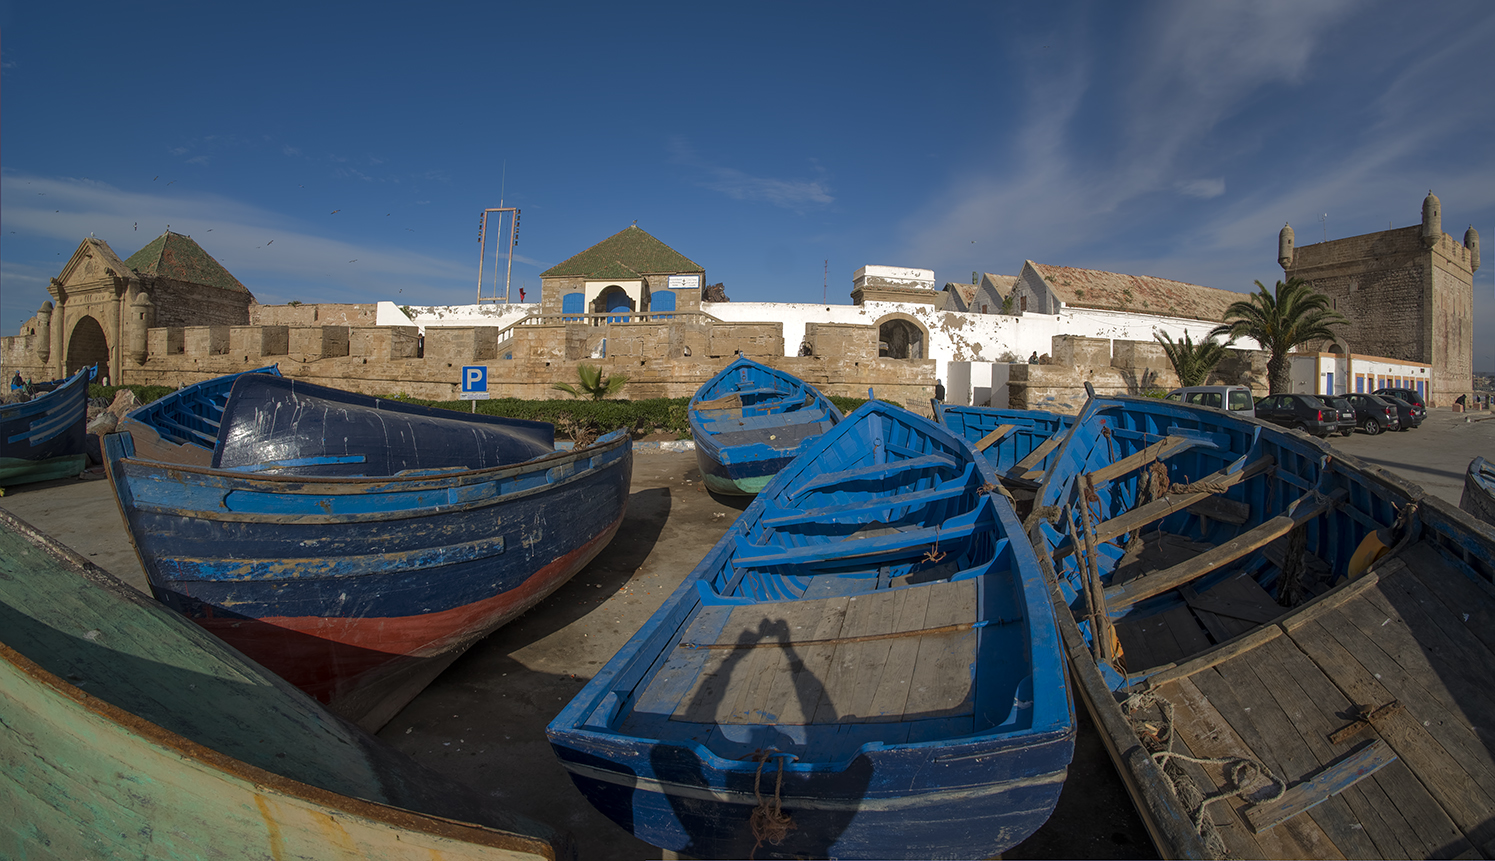 3985SB Fischerboote in Essaouira Marokko